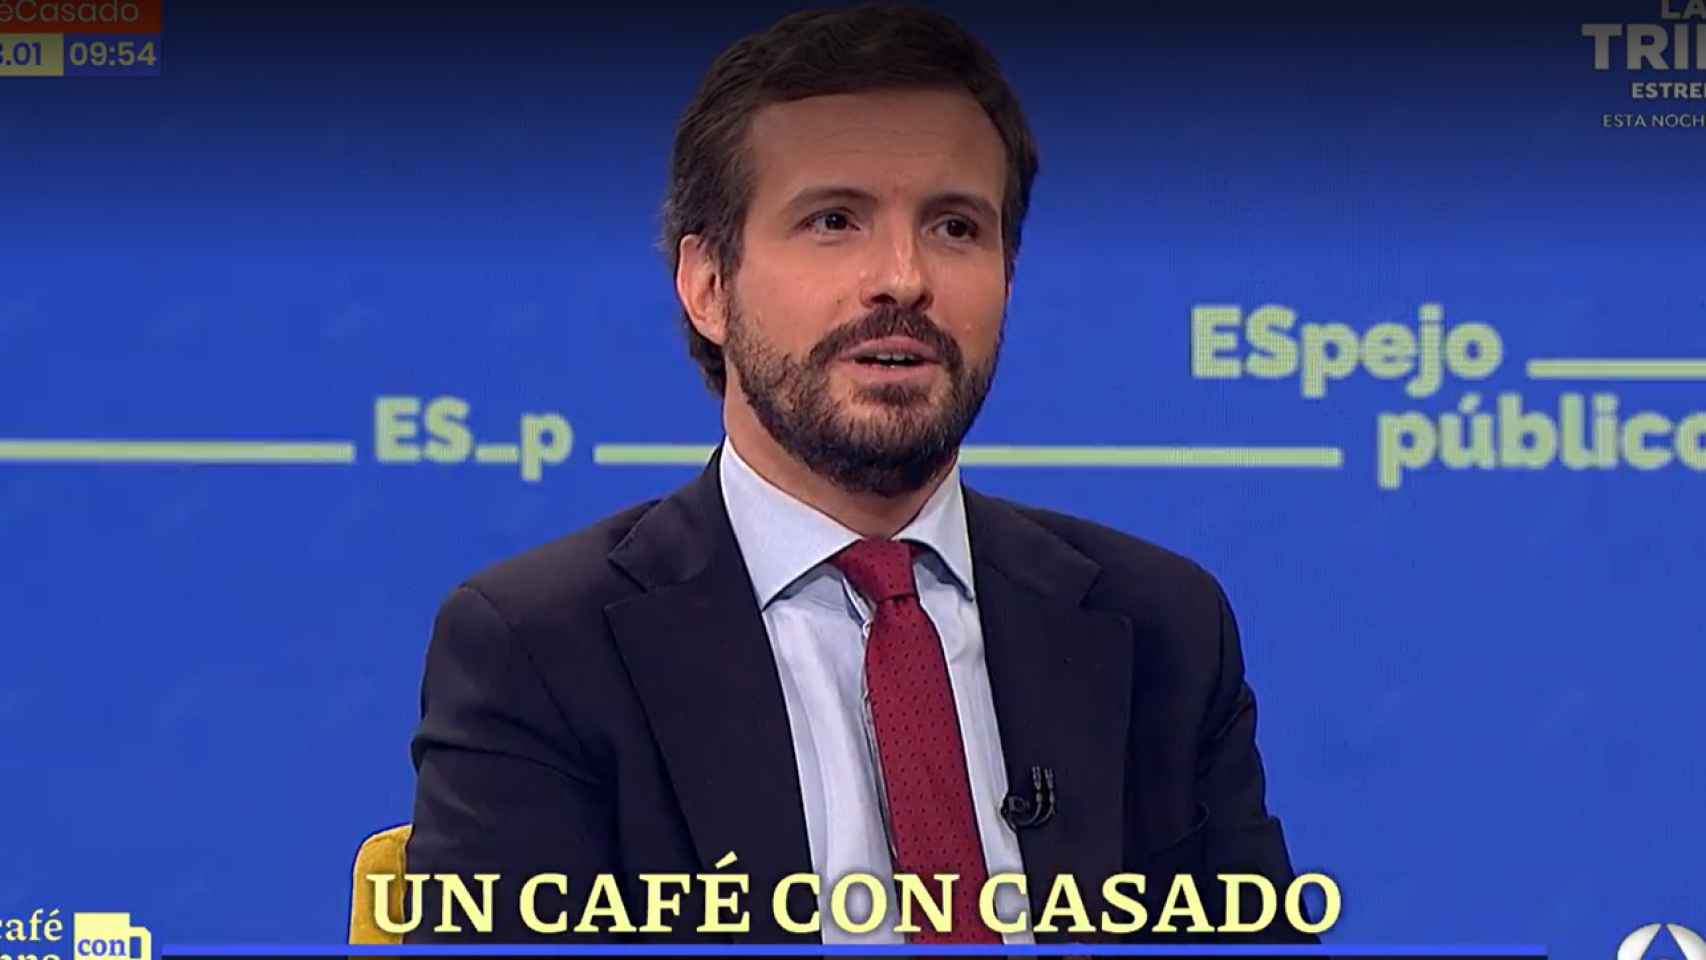 El presidente nacional del PP, Pablo Casado, este jueves en 'Espejo público' de Antena 3.